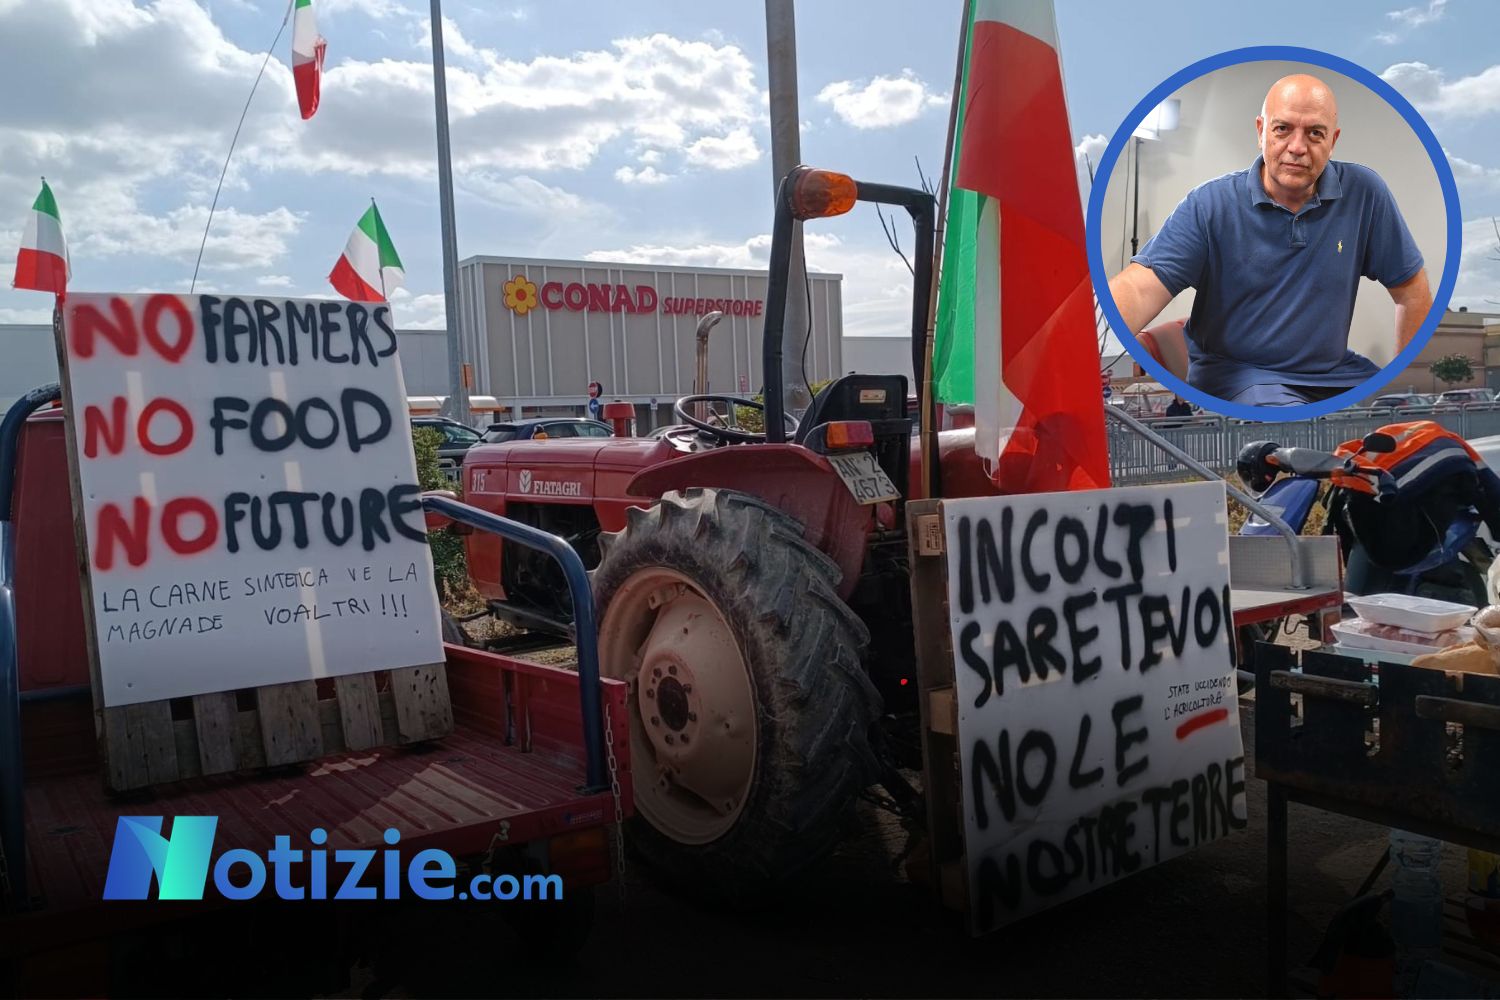 Protesta trattori, Rizzo (DSP) a Notizie.com: "Una lotta di tutti, la vicenda del green è una trappola"